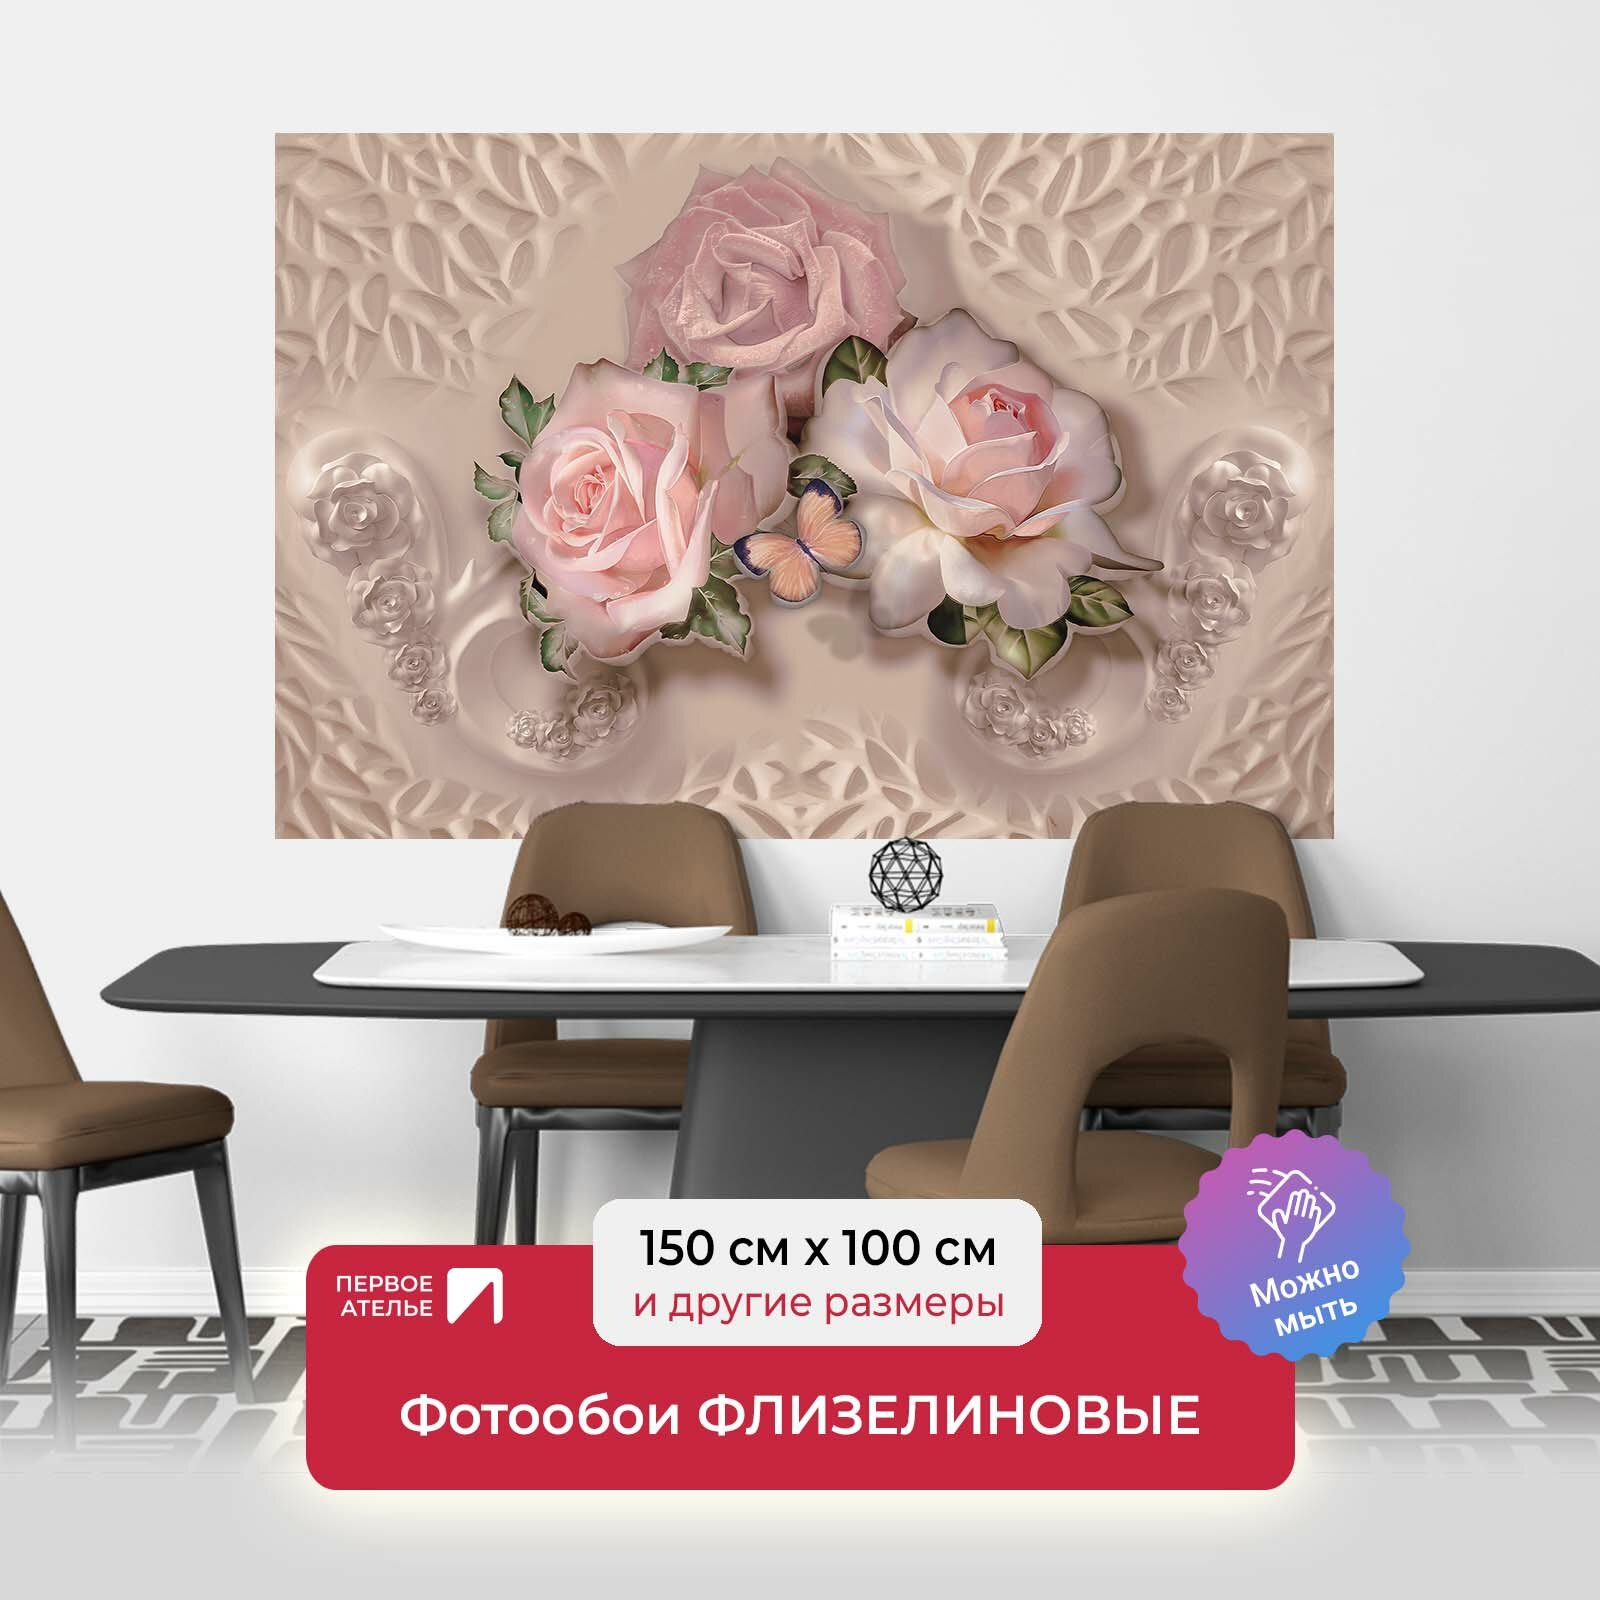 Фотообои на стену первое ателье "Три розовые розы с бабочкой" 150х100 см (ШхВ), флизелиновые Premium